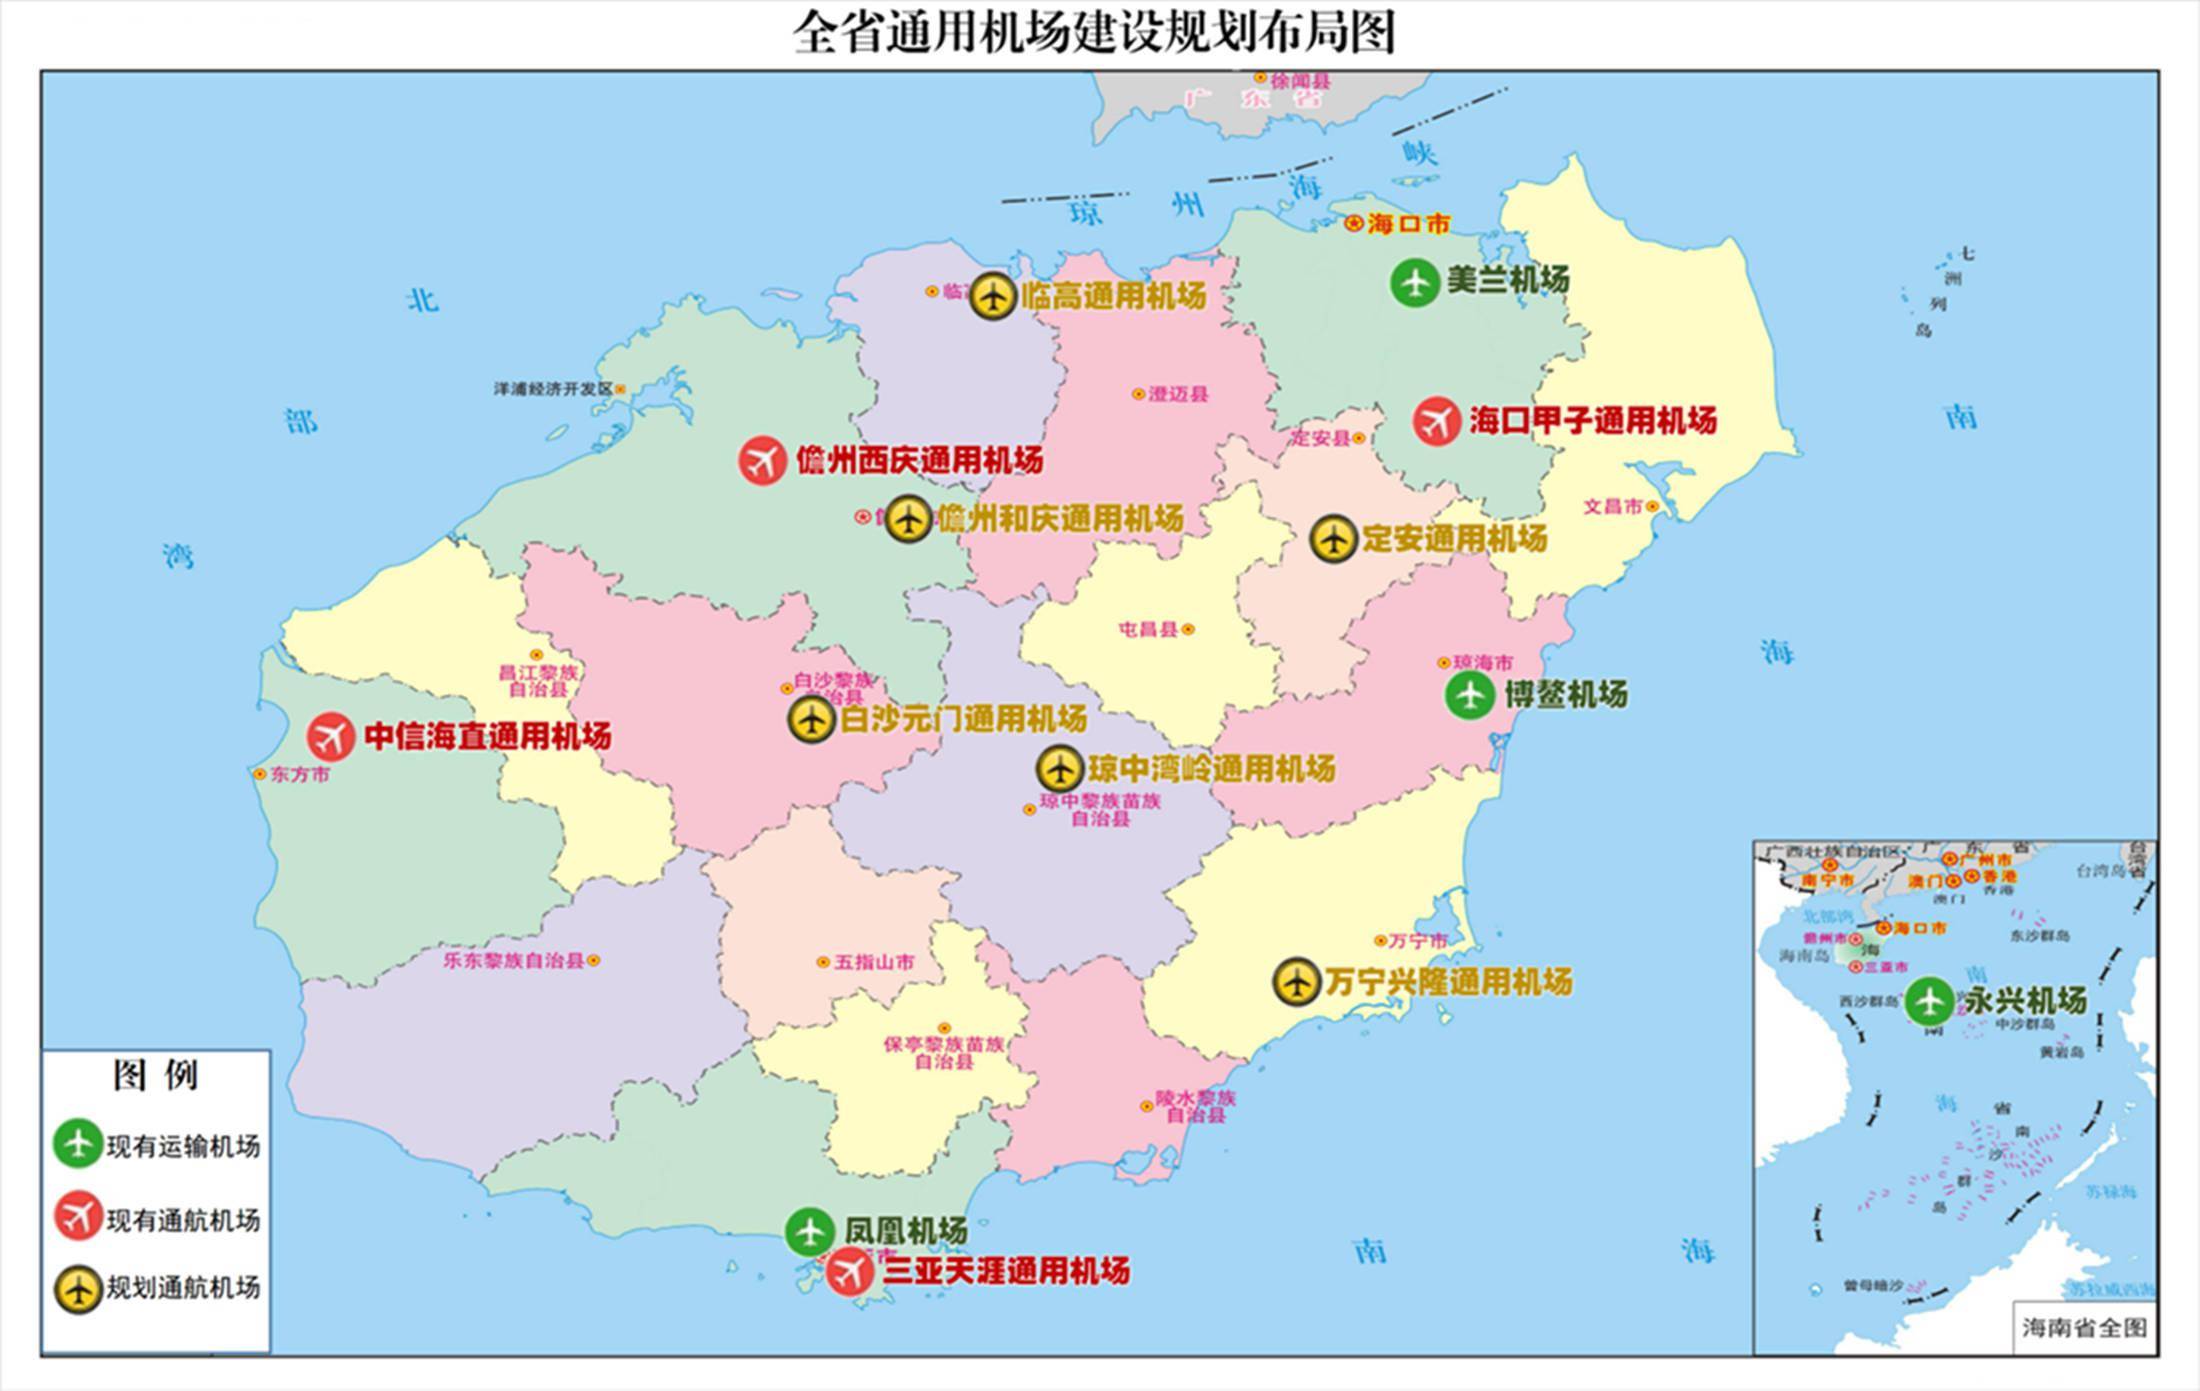 海南省通用航空机场数量将达10个左右2025年实现环岛常态化飞行